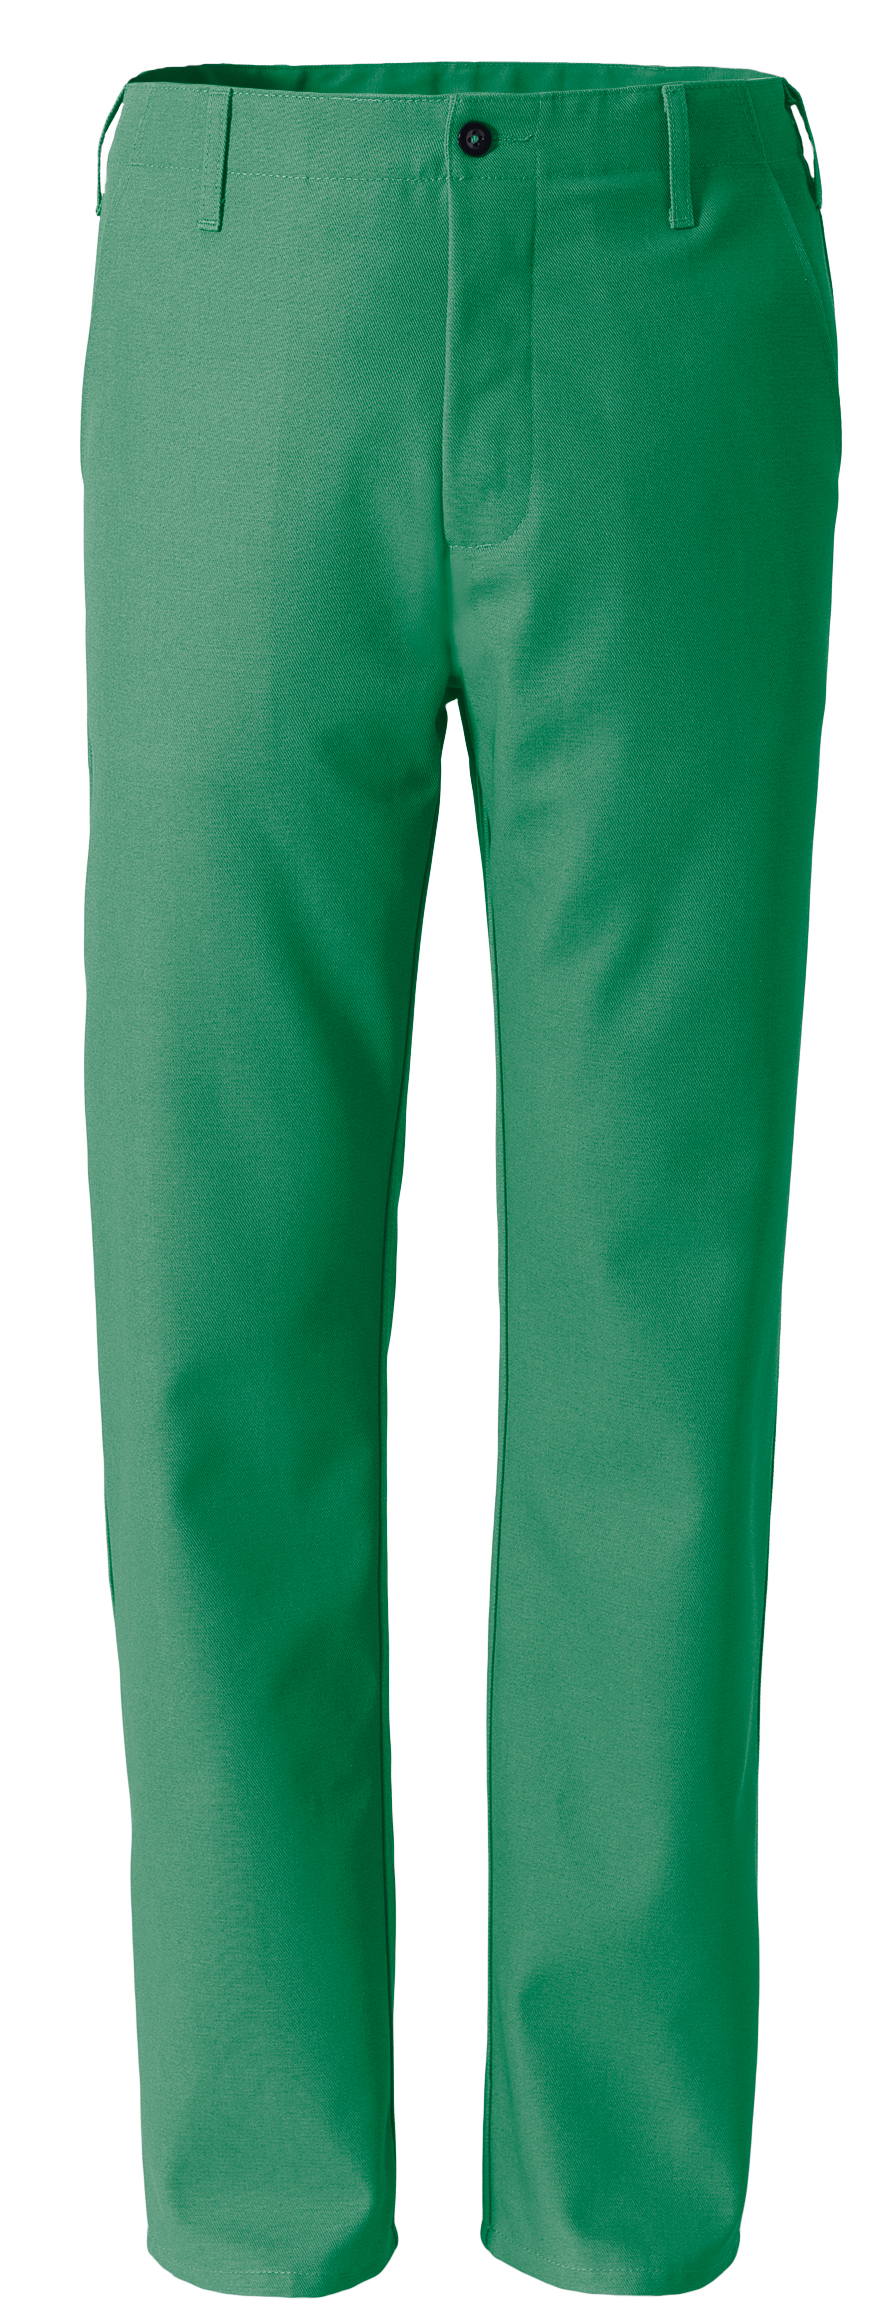 ROFA Bundhose Arbeitshose Berufshose Workerhose Arbeitskleidung Berufskleidung 330 g grün